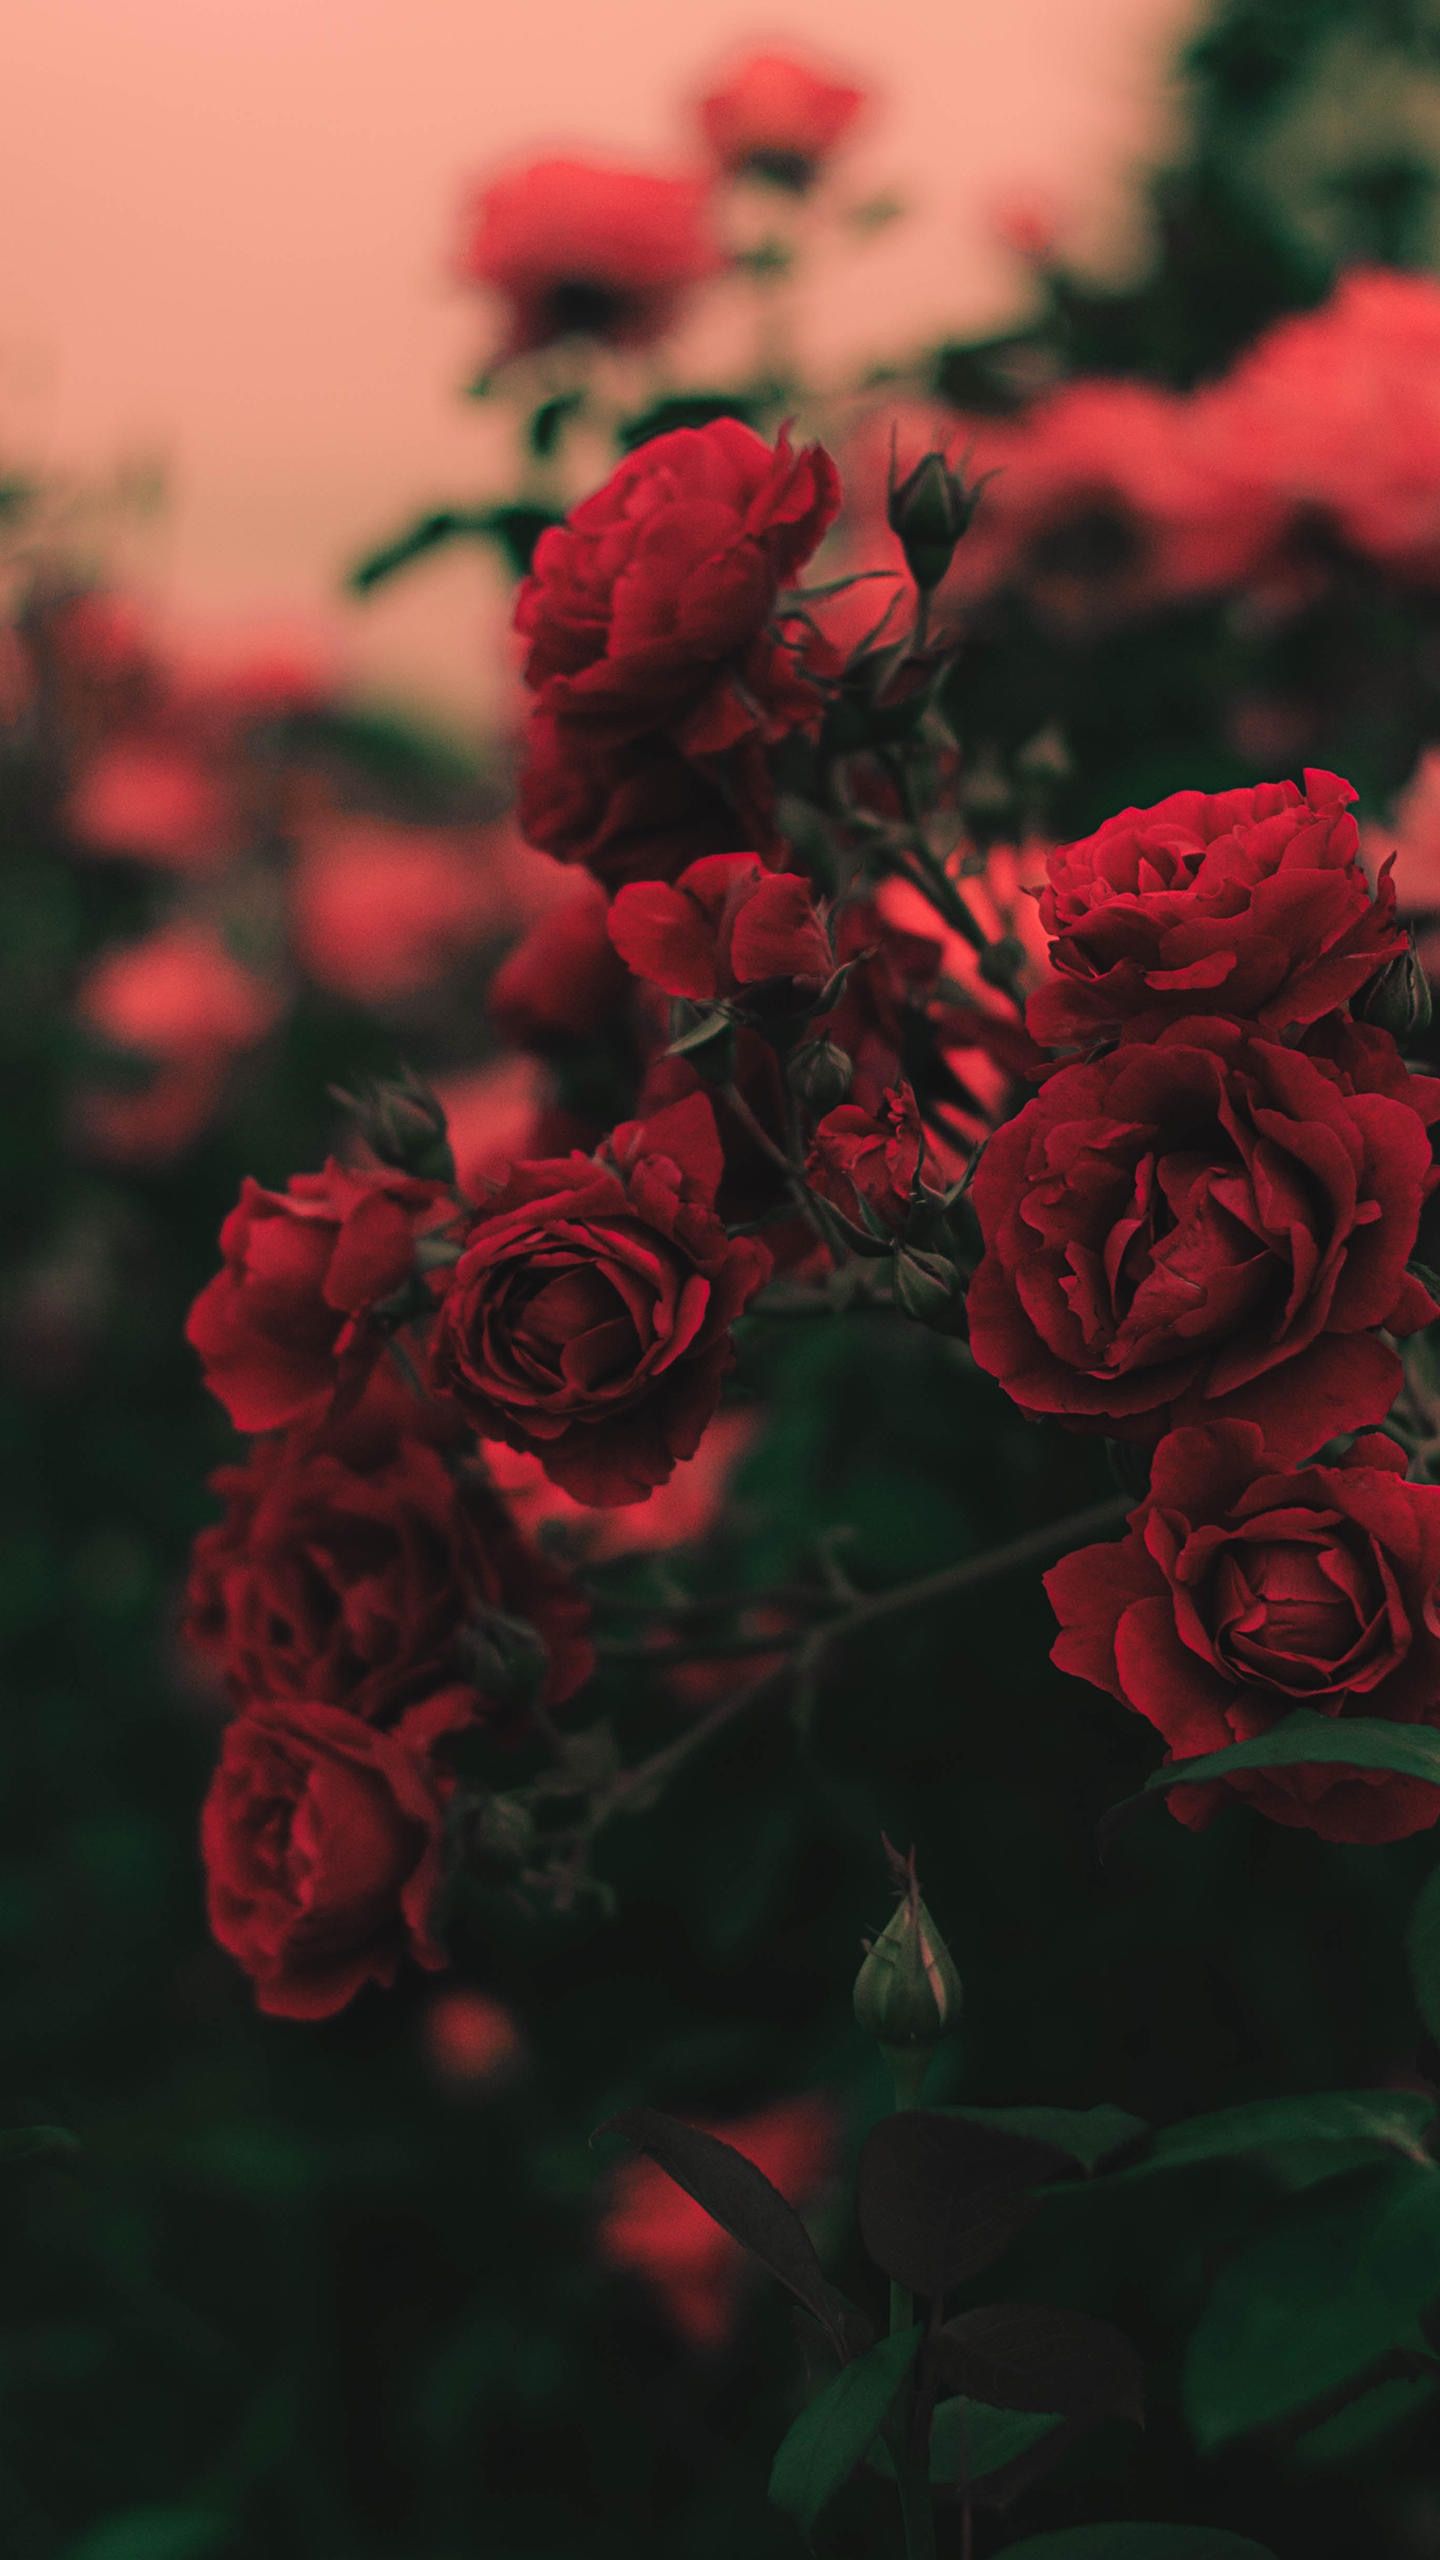 love is like rose wallpaper,flower,flowering plant,red,garden roses,rose